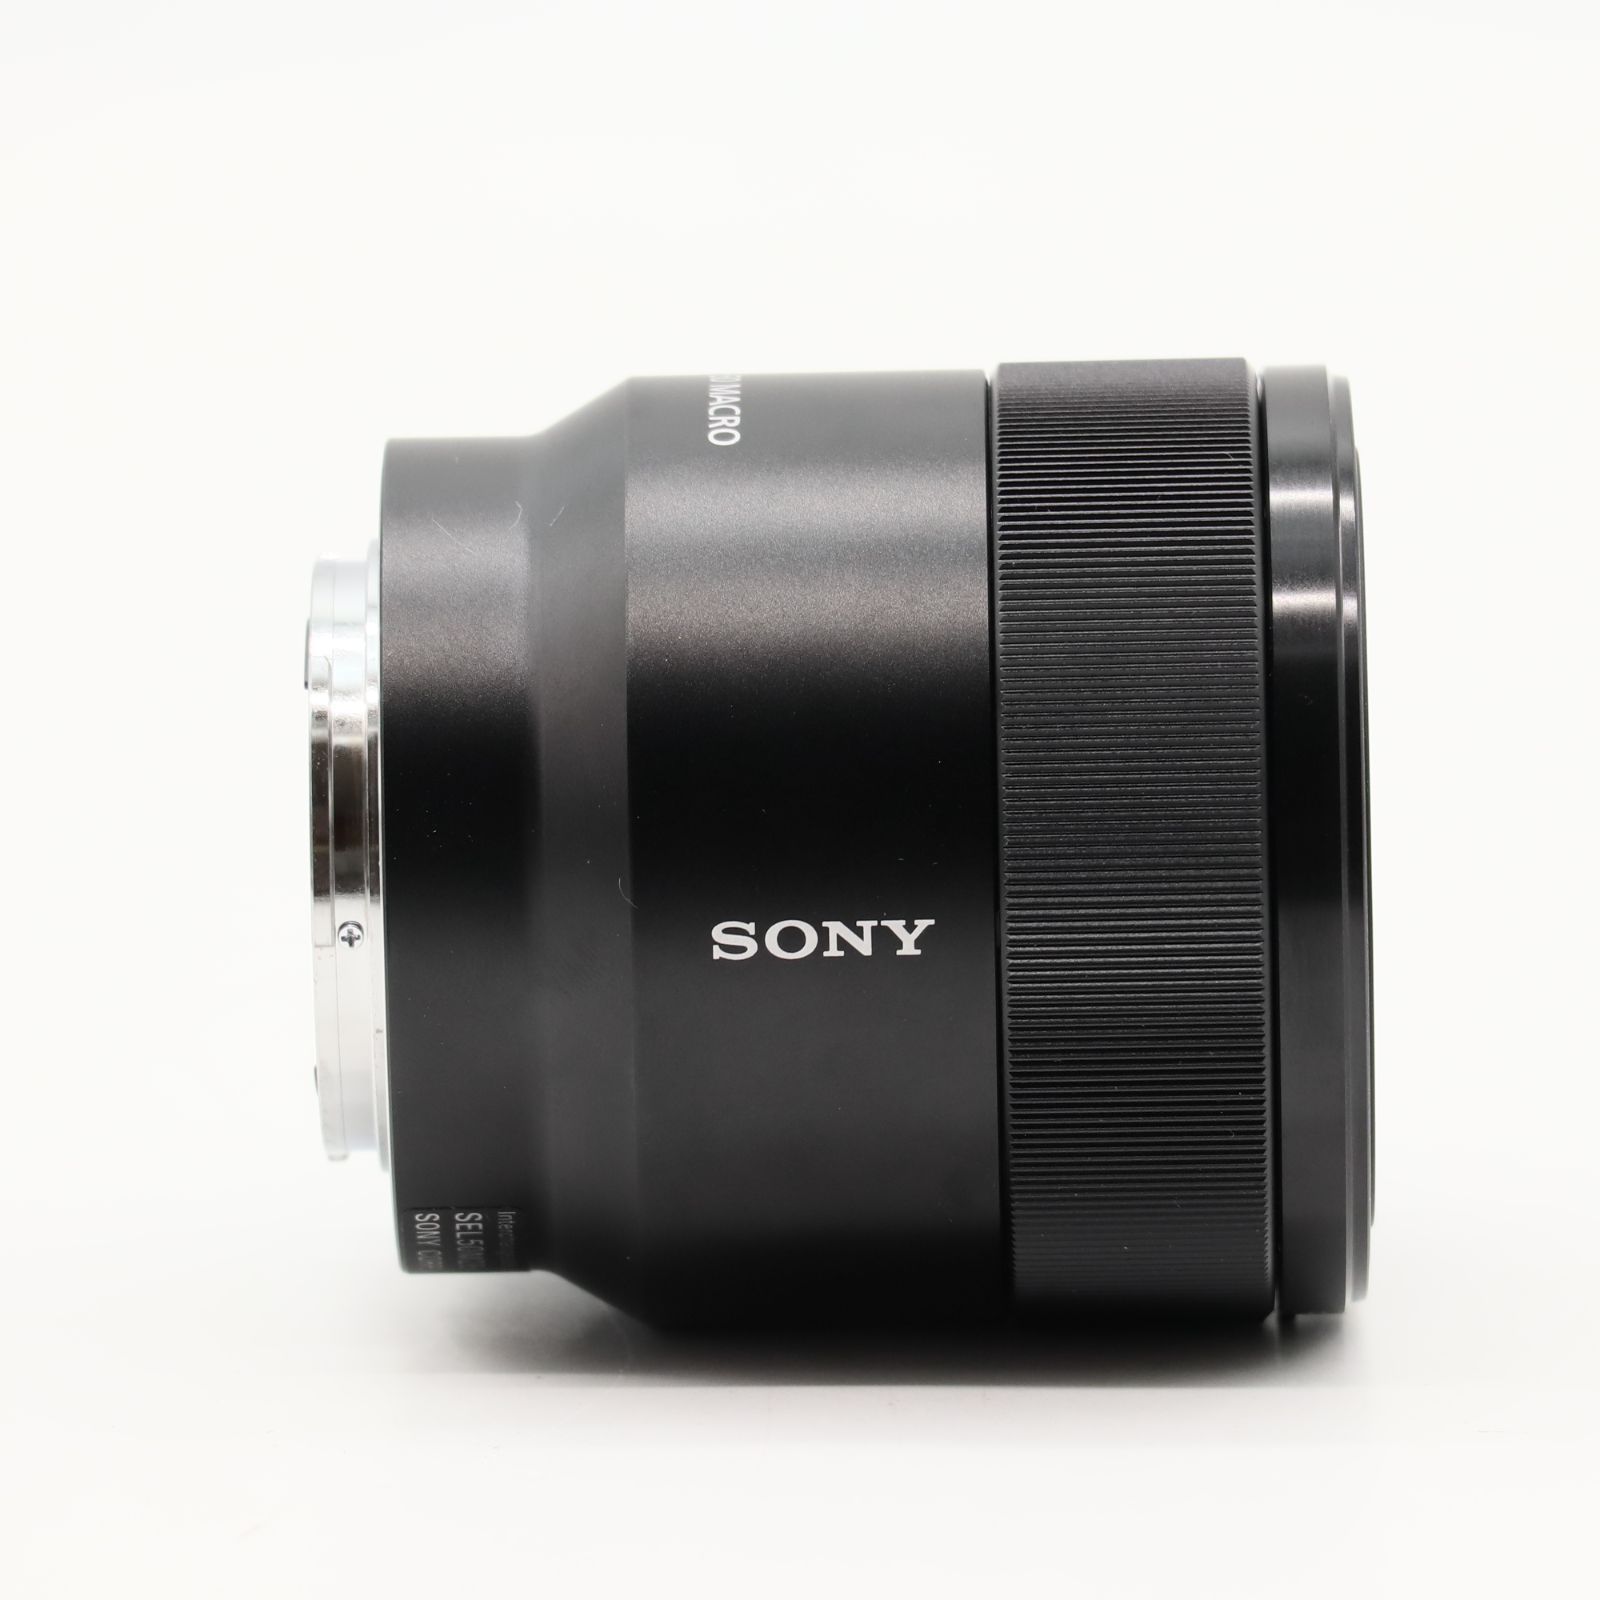 ソニー(SONY) マクロ フルサイズ FE 50mm F2.8 Macro デジタル一眼カメラα[Eマウント]用 純正レンズ SEL50M28  #3410 - メルカリ